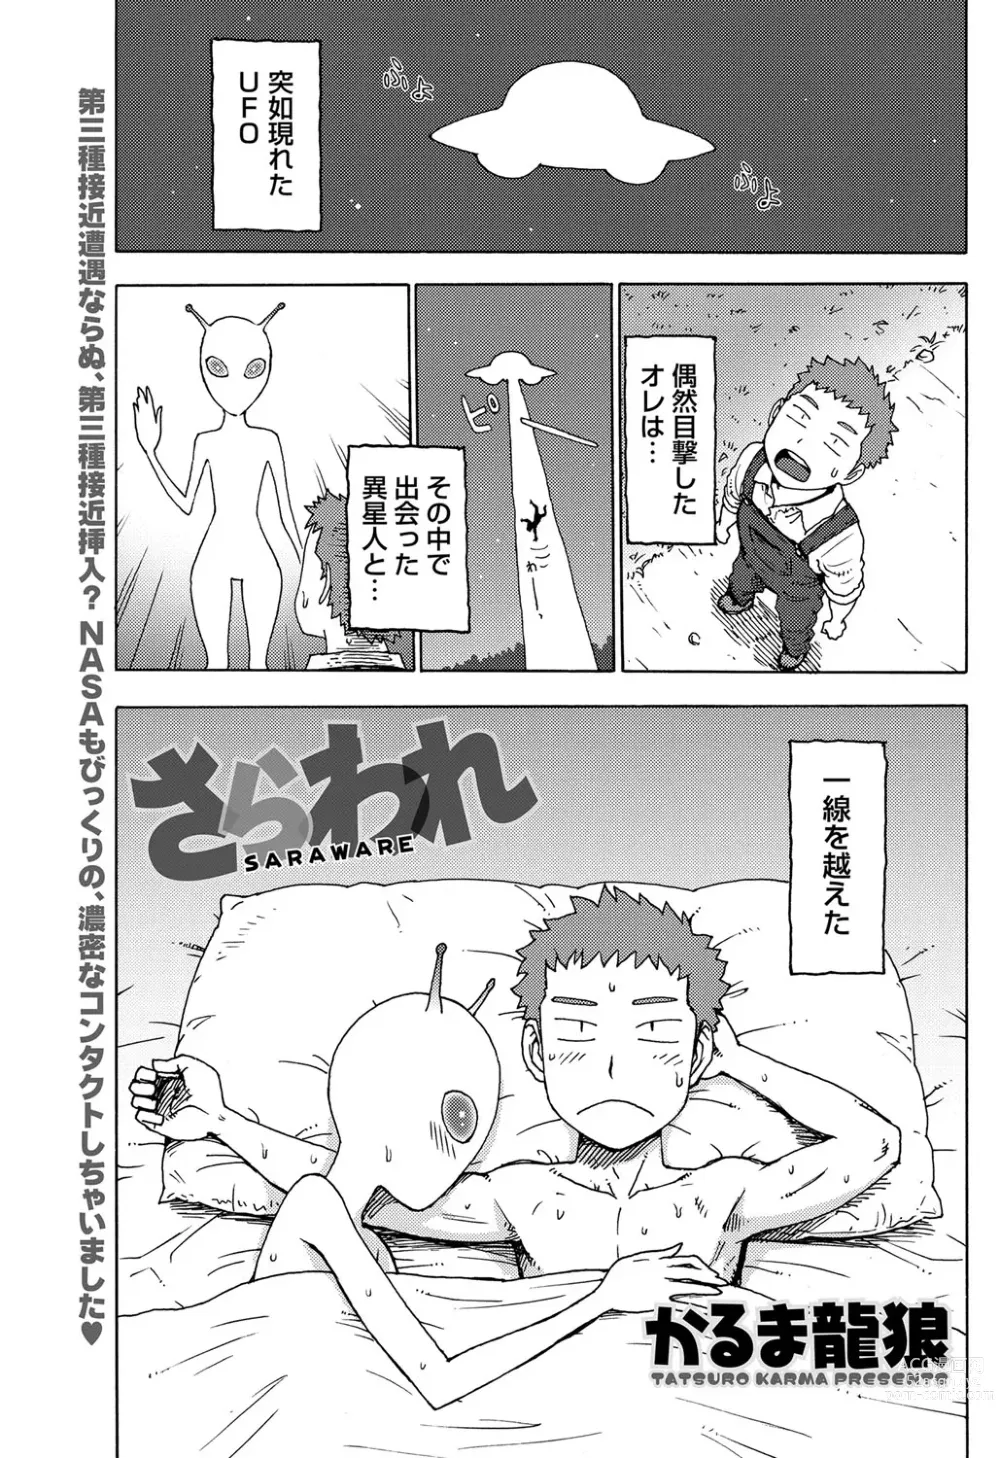 Page 1 of manga Saraware